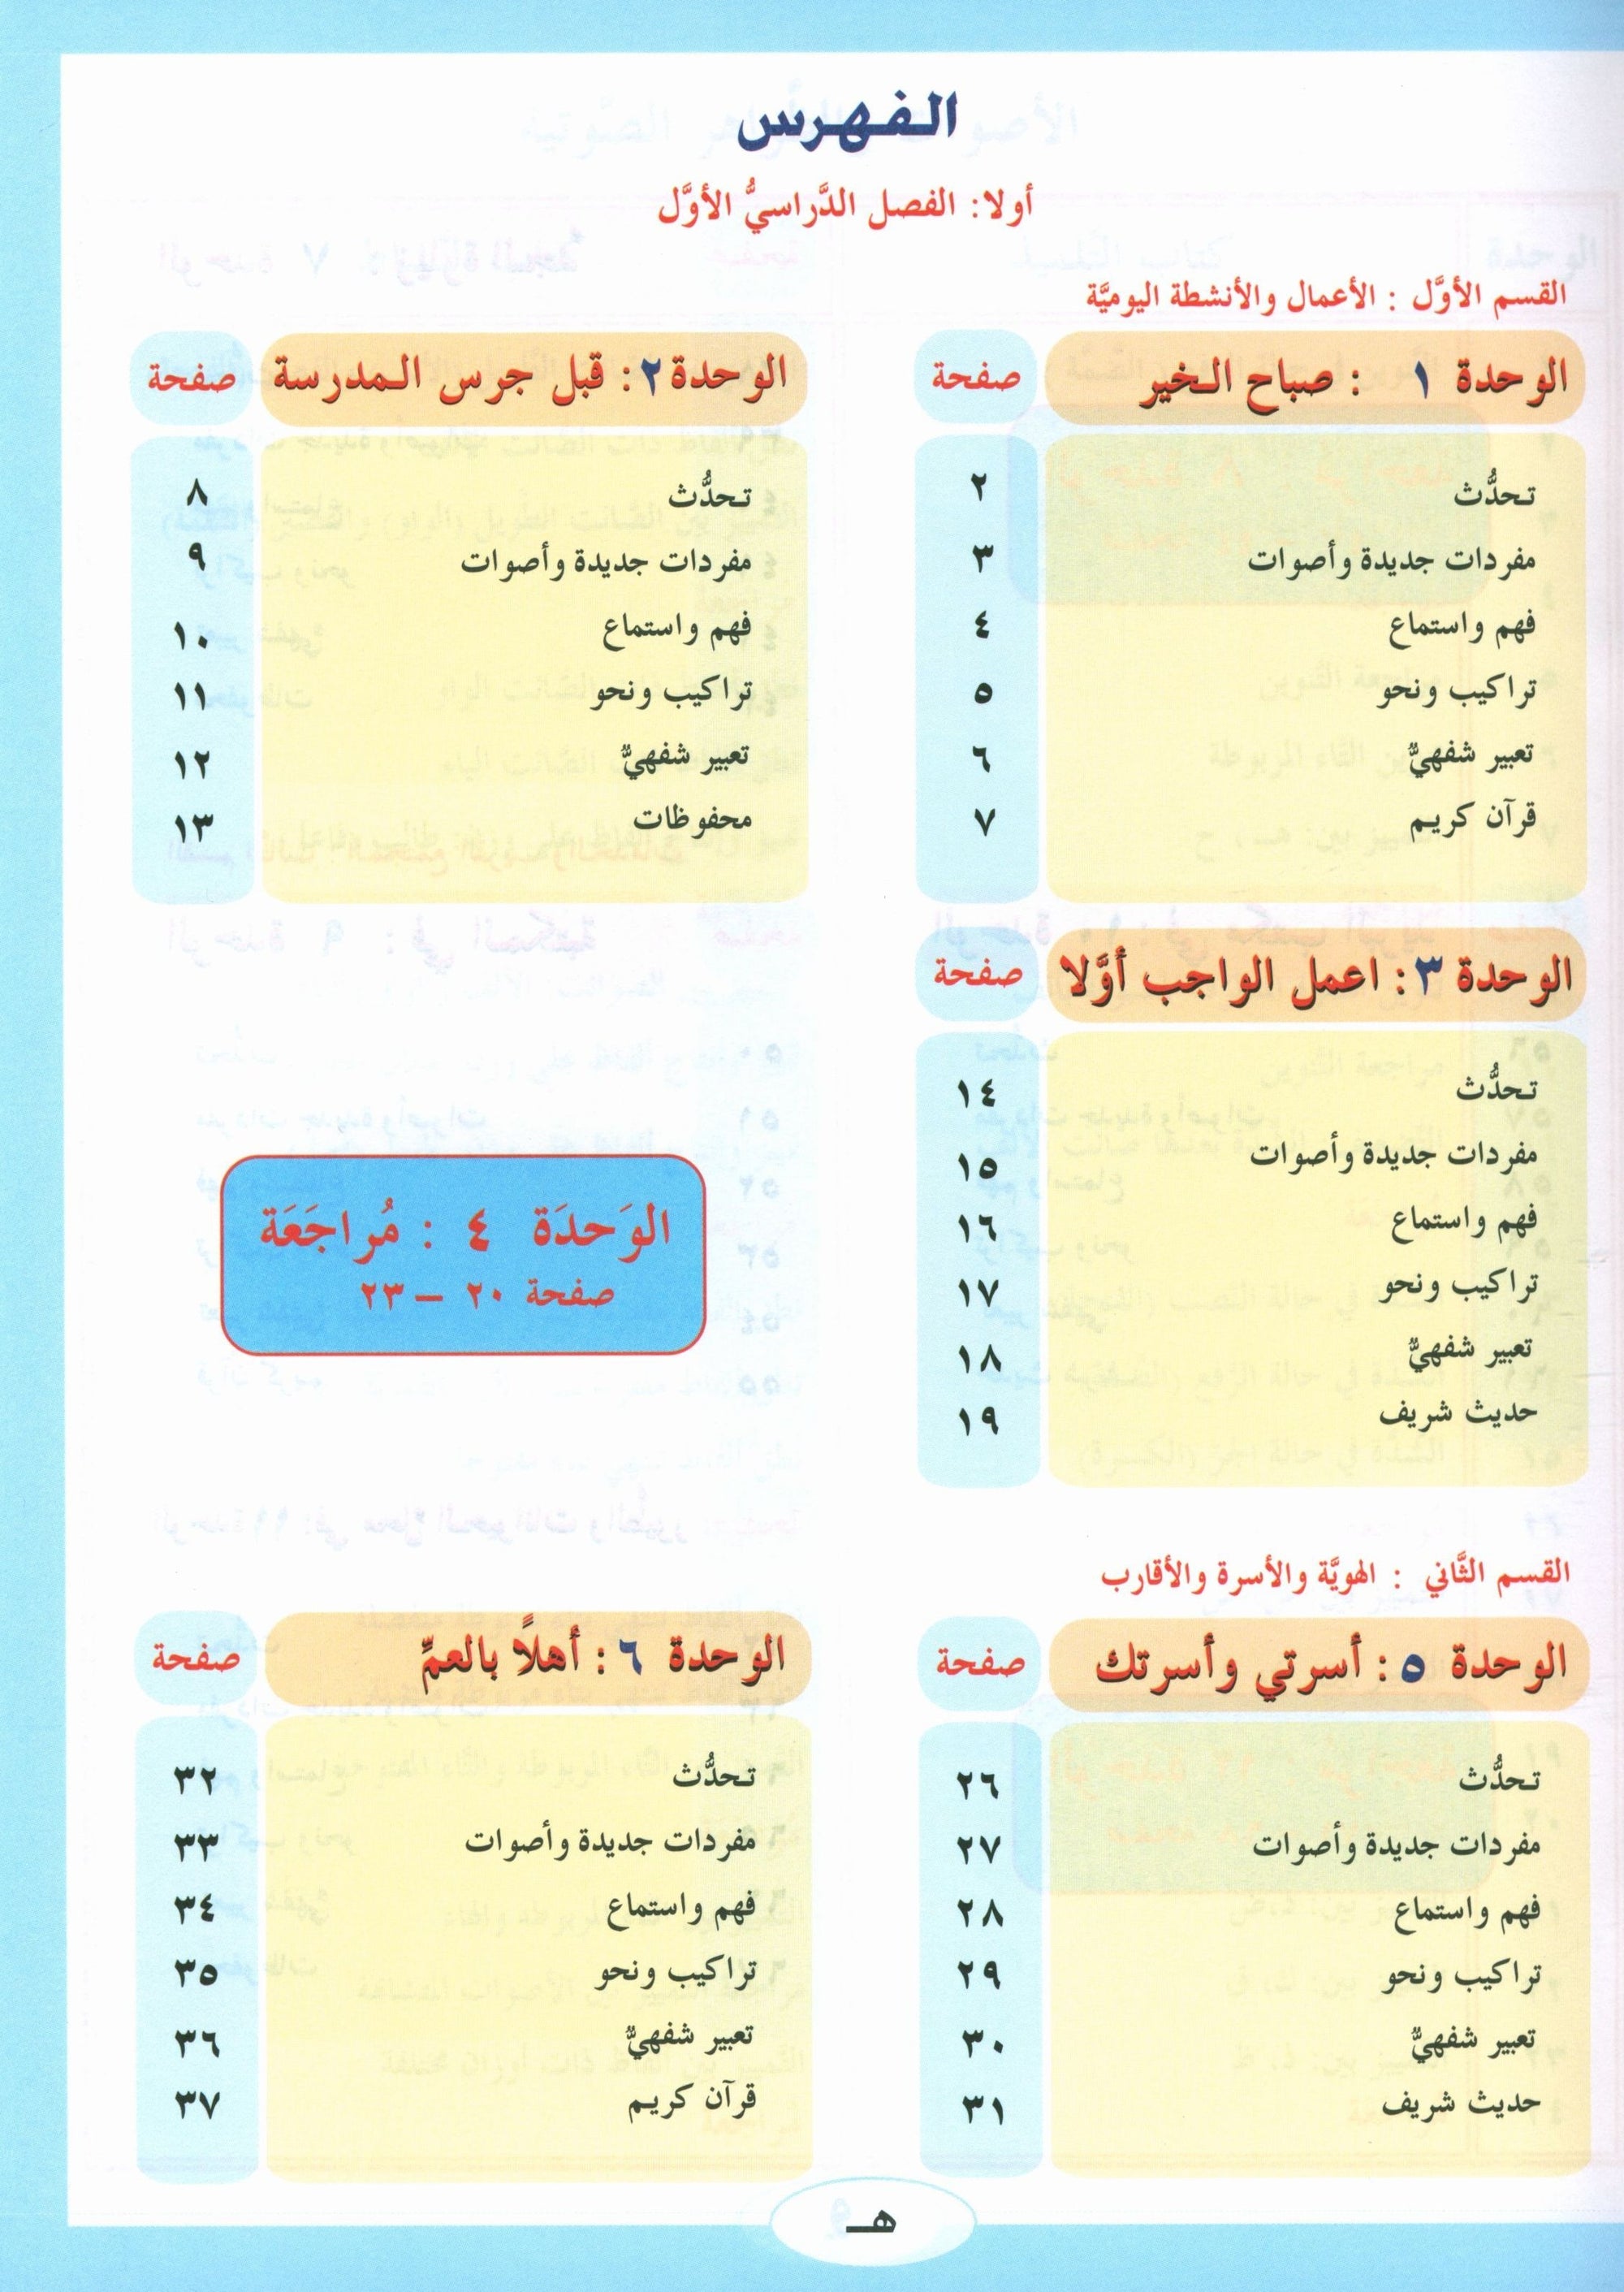 ICO Learn Arabic Textbook Level 2 Part 1 تعلم العربية كتاب التلميذ